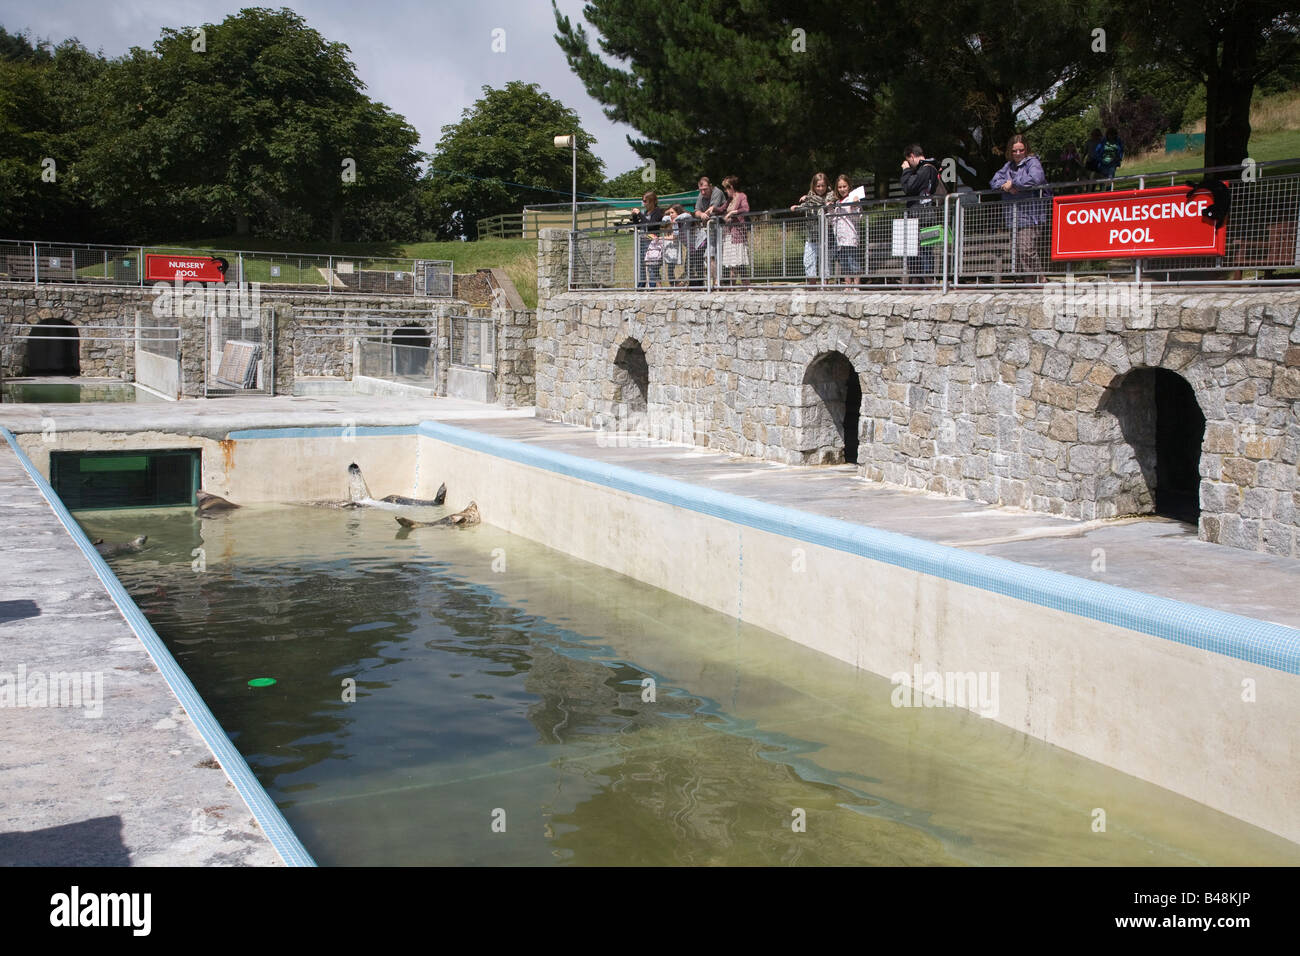 Les phoques de la convalescence national seal sanctuary cornwall piscine Banque D'Images